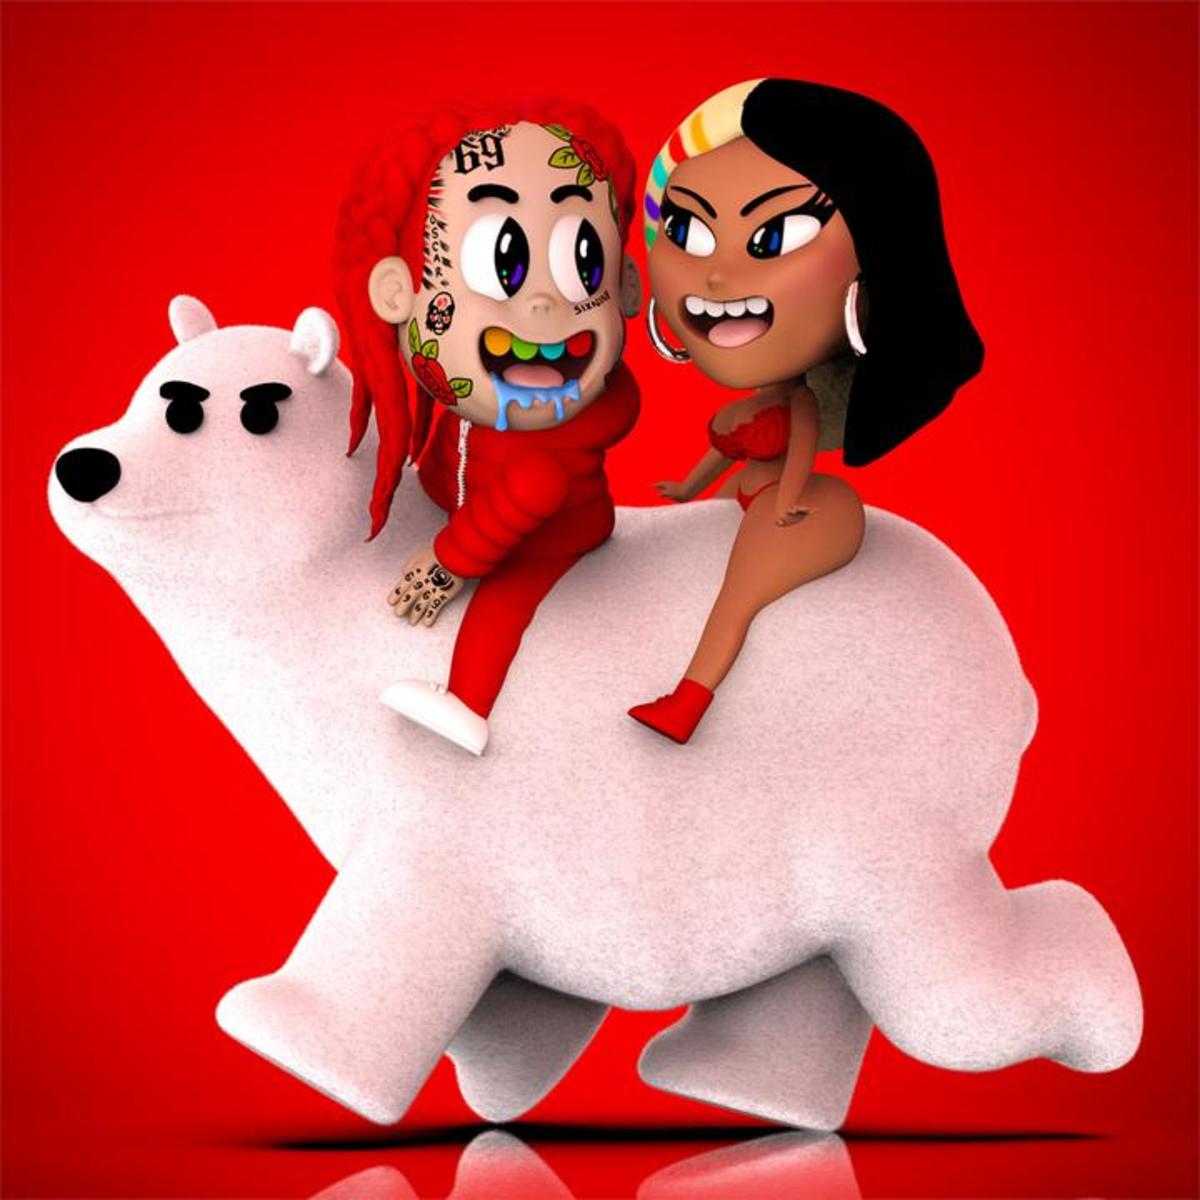 6ix9ine & Nicki Minaj Release Alternate Version Of “Trollz”